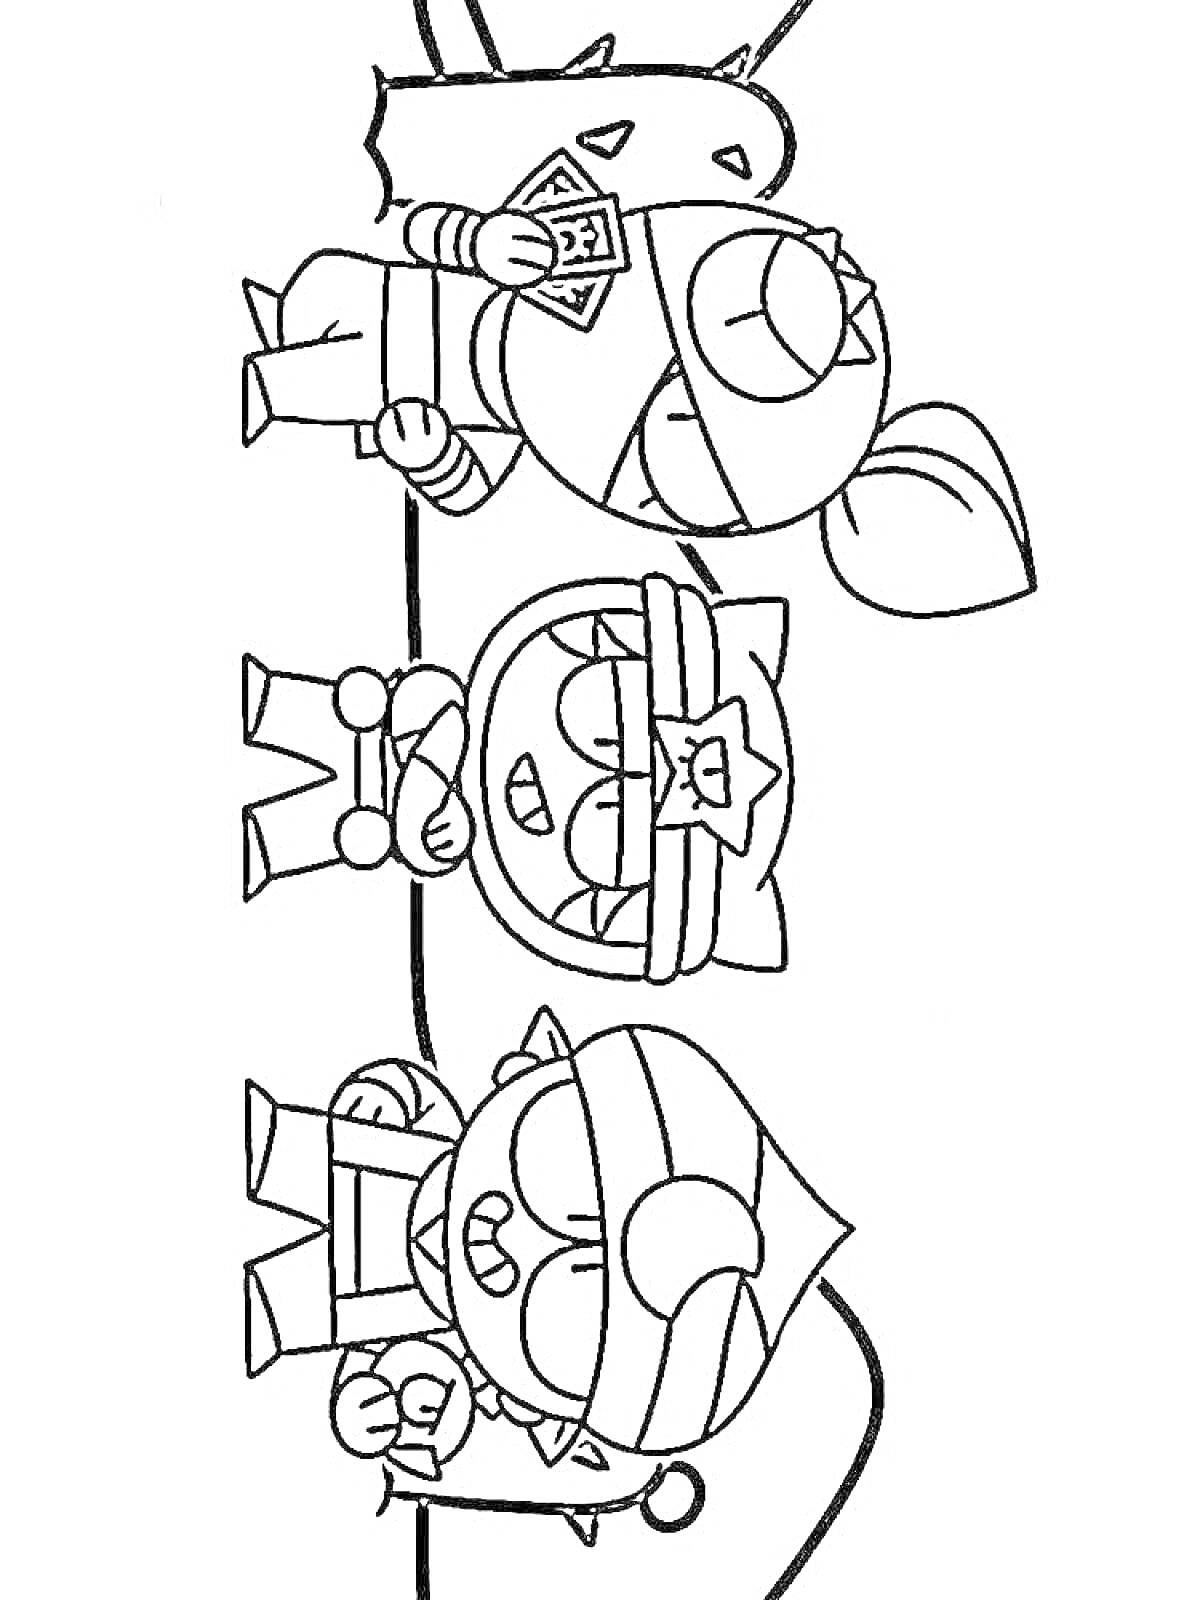 Раскраска Персонажи из игры Brawl Stars - Тара и двое других персонажей с картами и аксессуарами